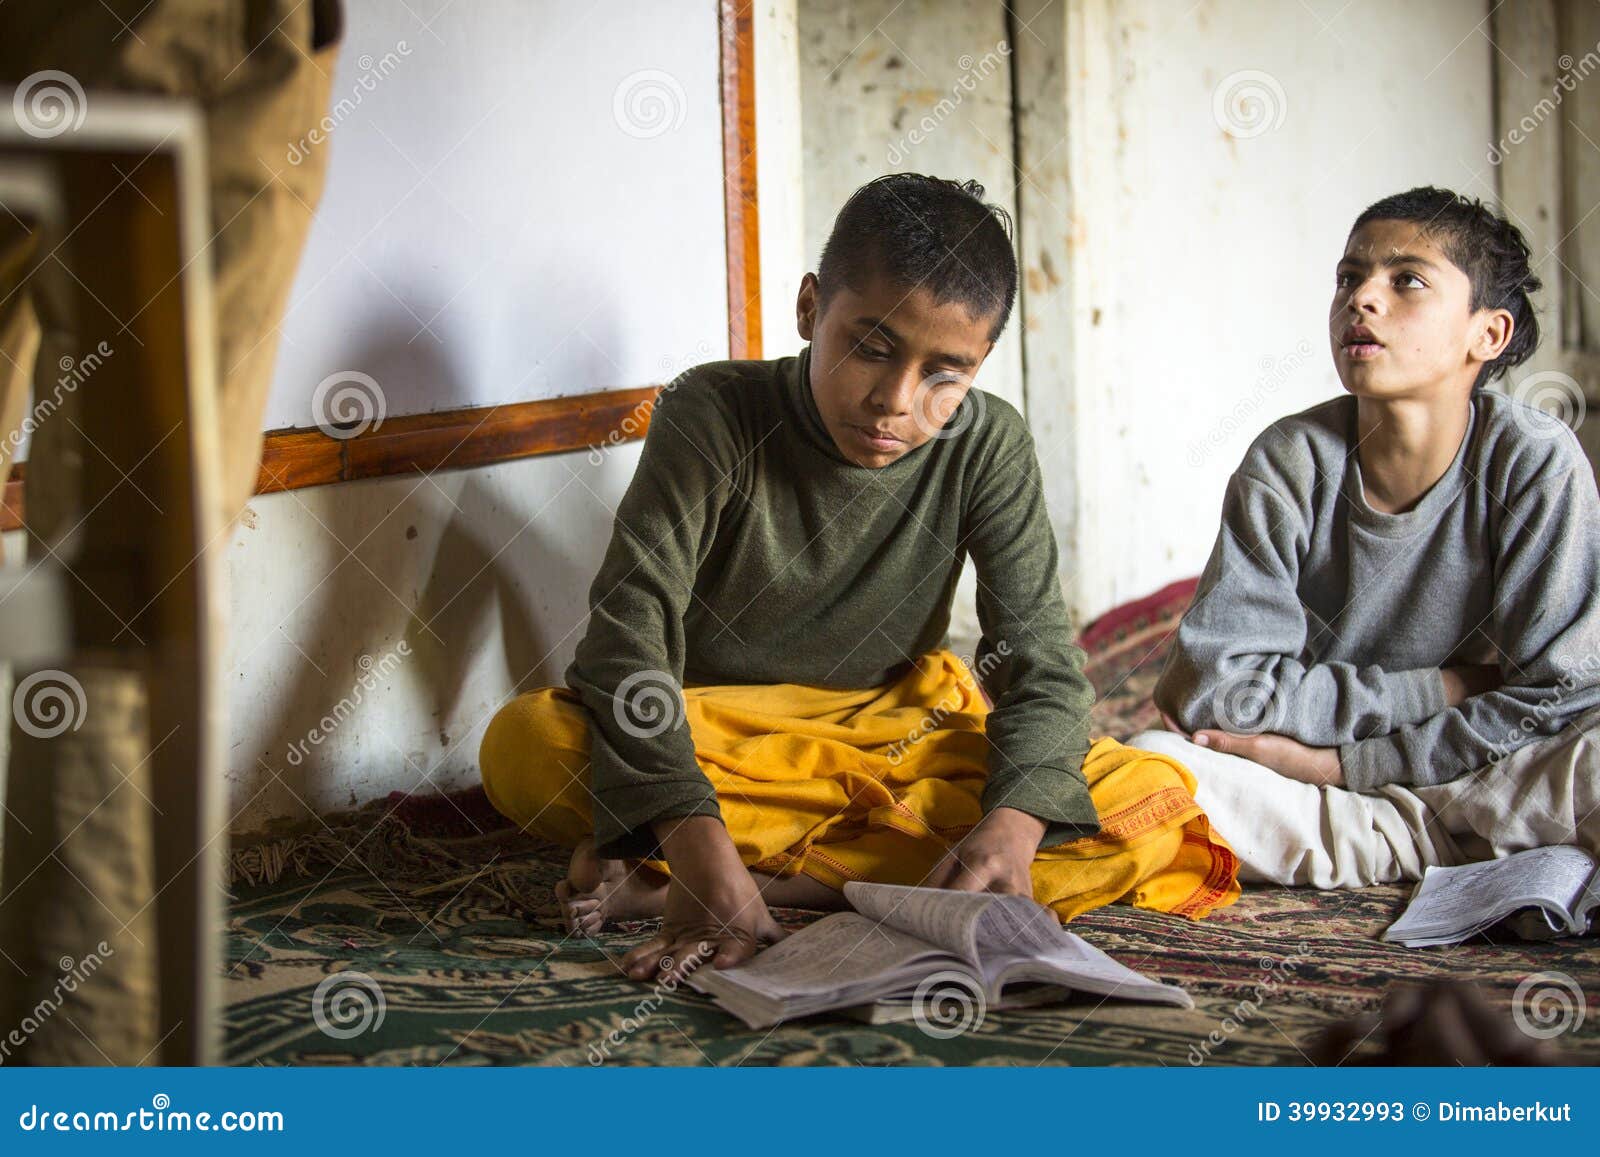 教训的未知的孩子在公立学校 编辑类图片. 图片 包括有 课程, 尼泊尔, 教育, 婴孩, 教室, 孩子, 人群 - 37723590